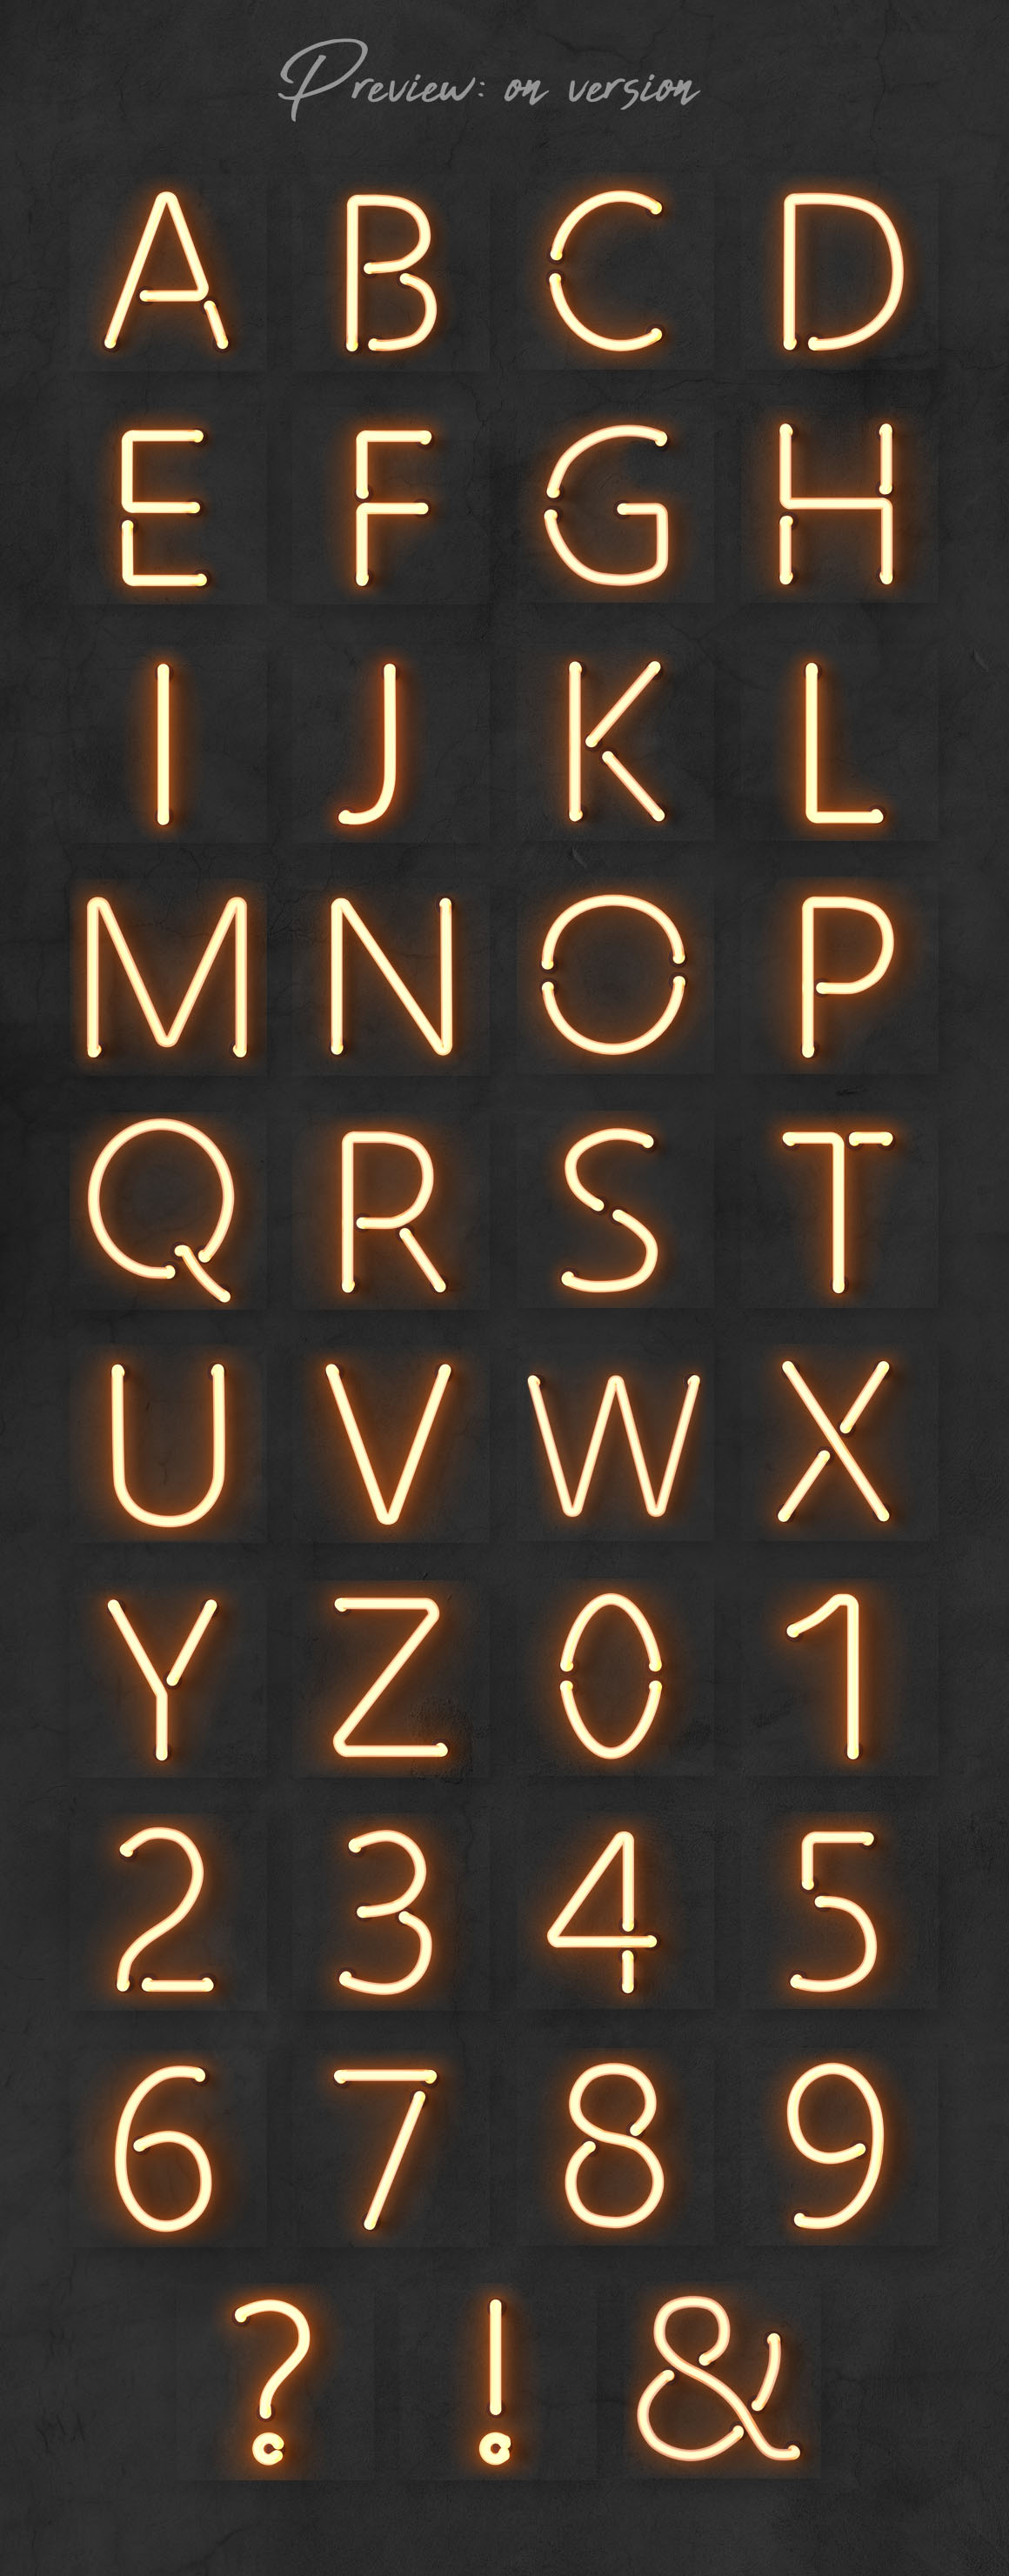 霓虹灯发光字的图形元素素材包-Neon alphabet kit